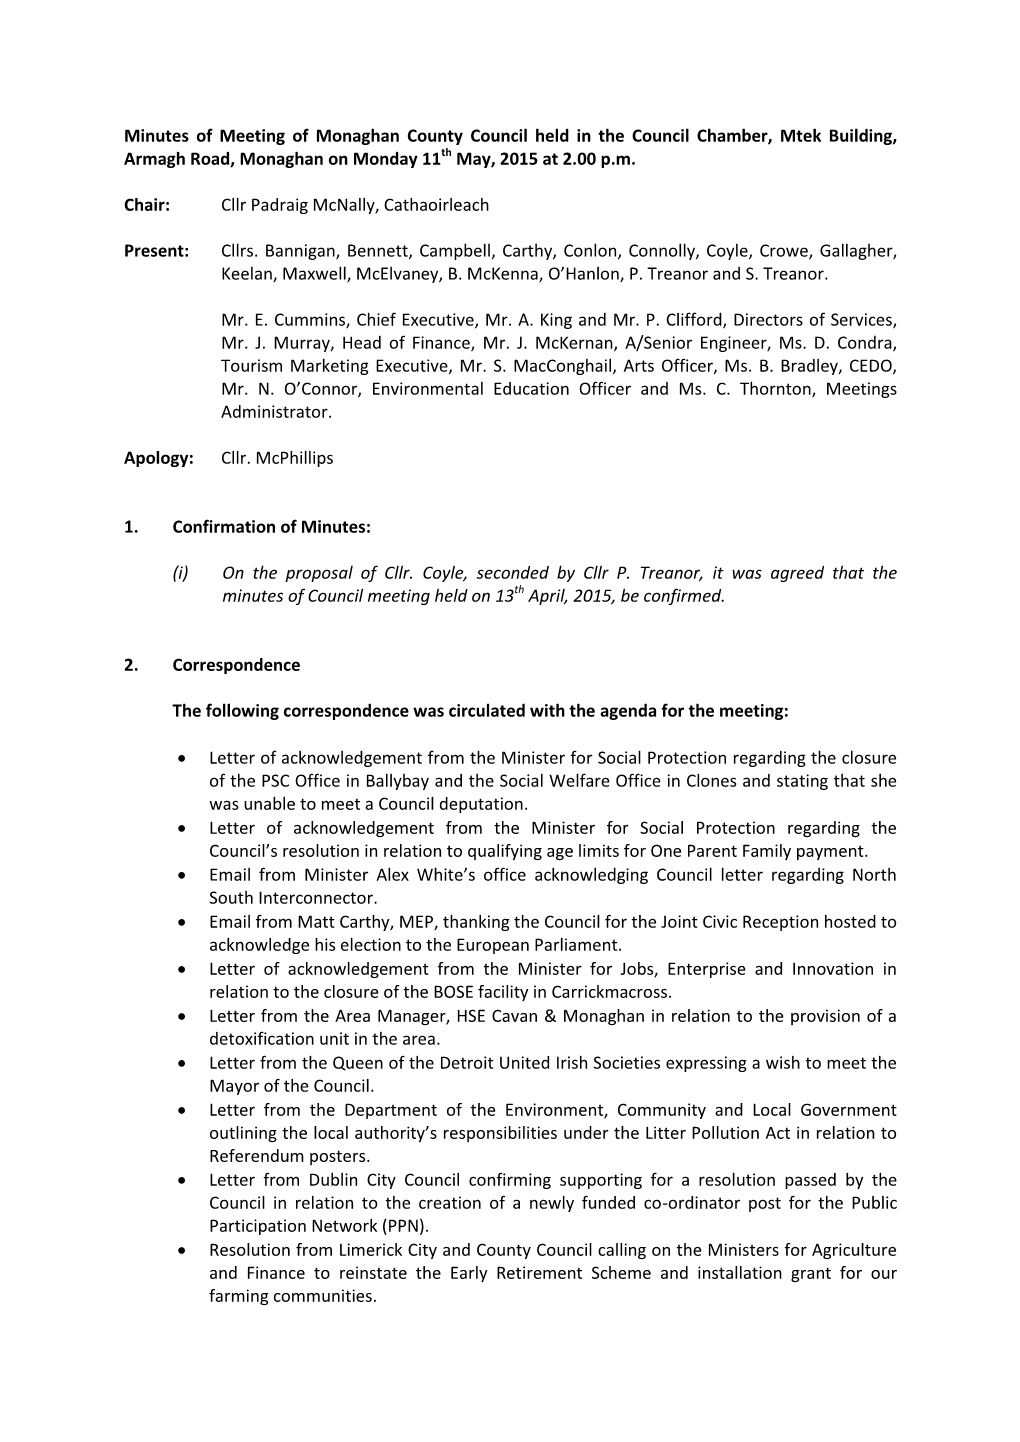 Council Meeting Minutes May 2015